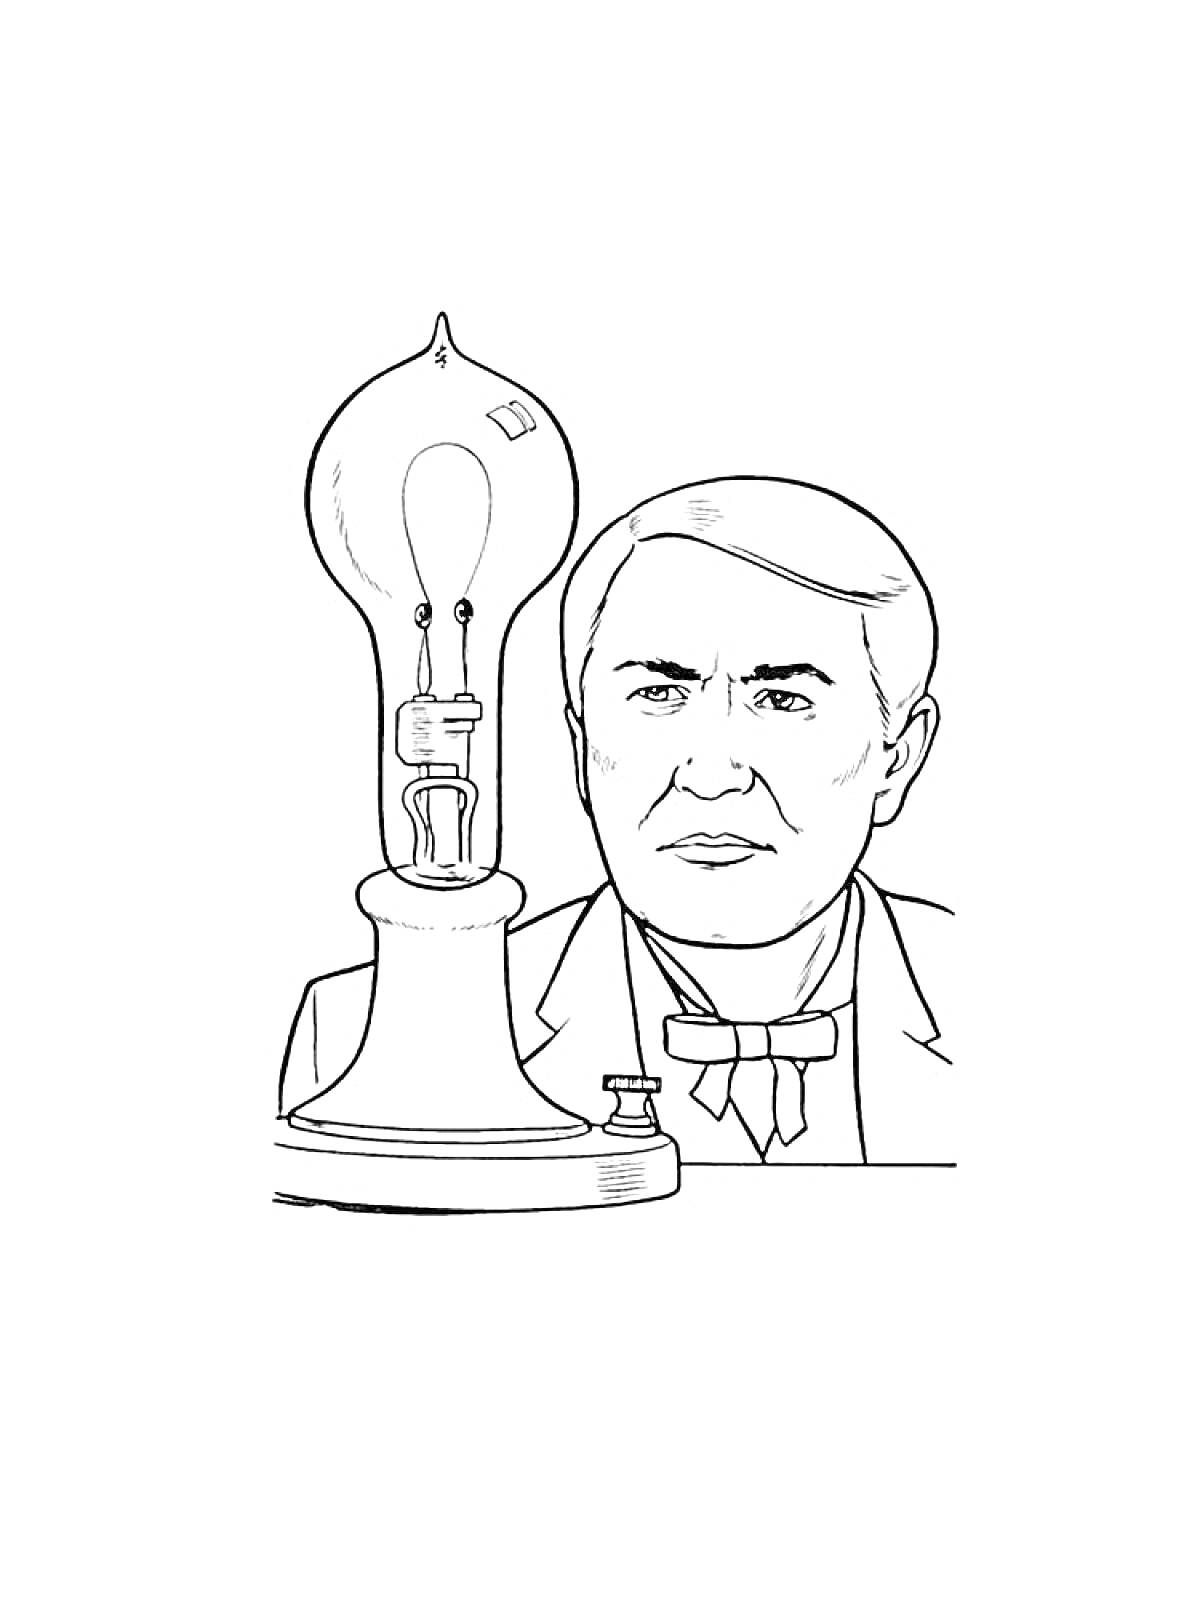 Портрет мужчины с лампой накаливания.